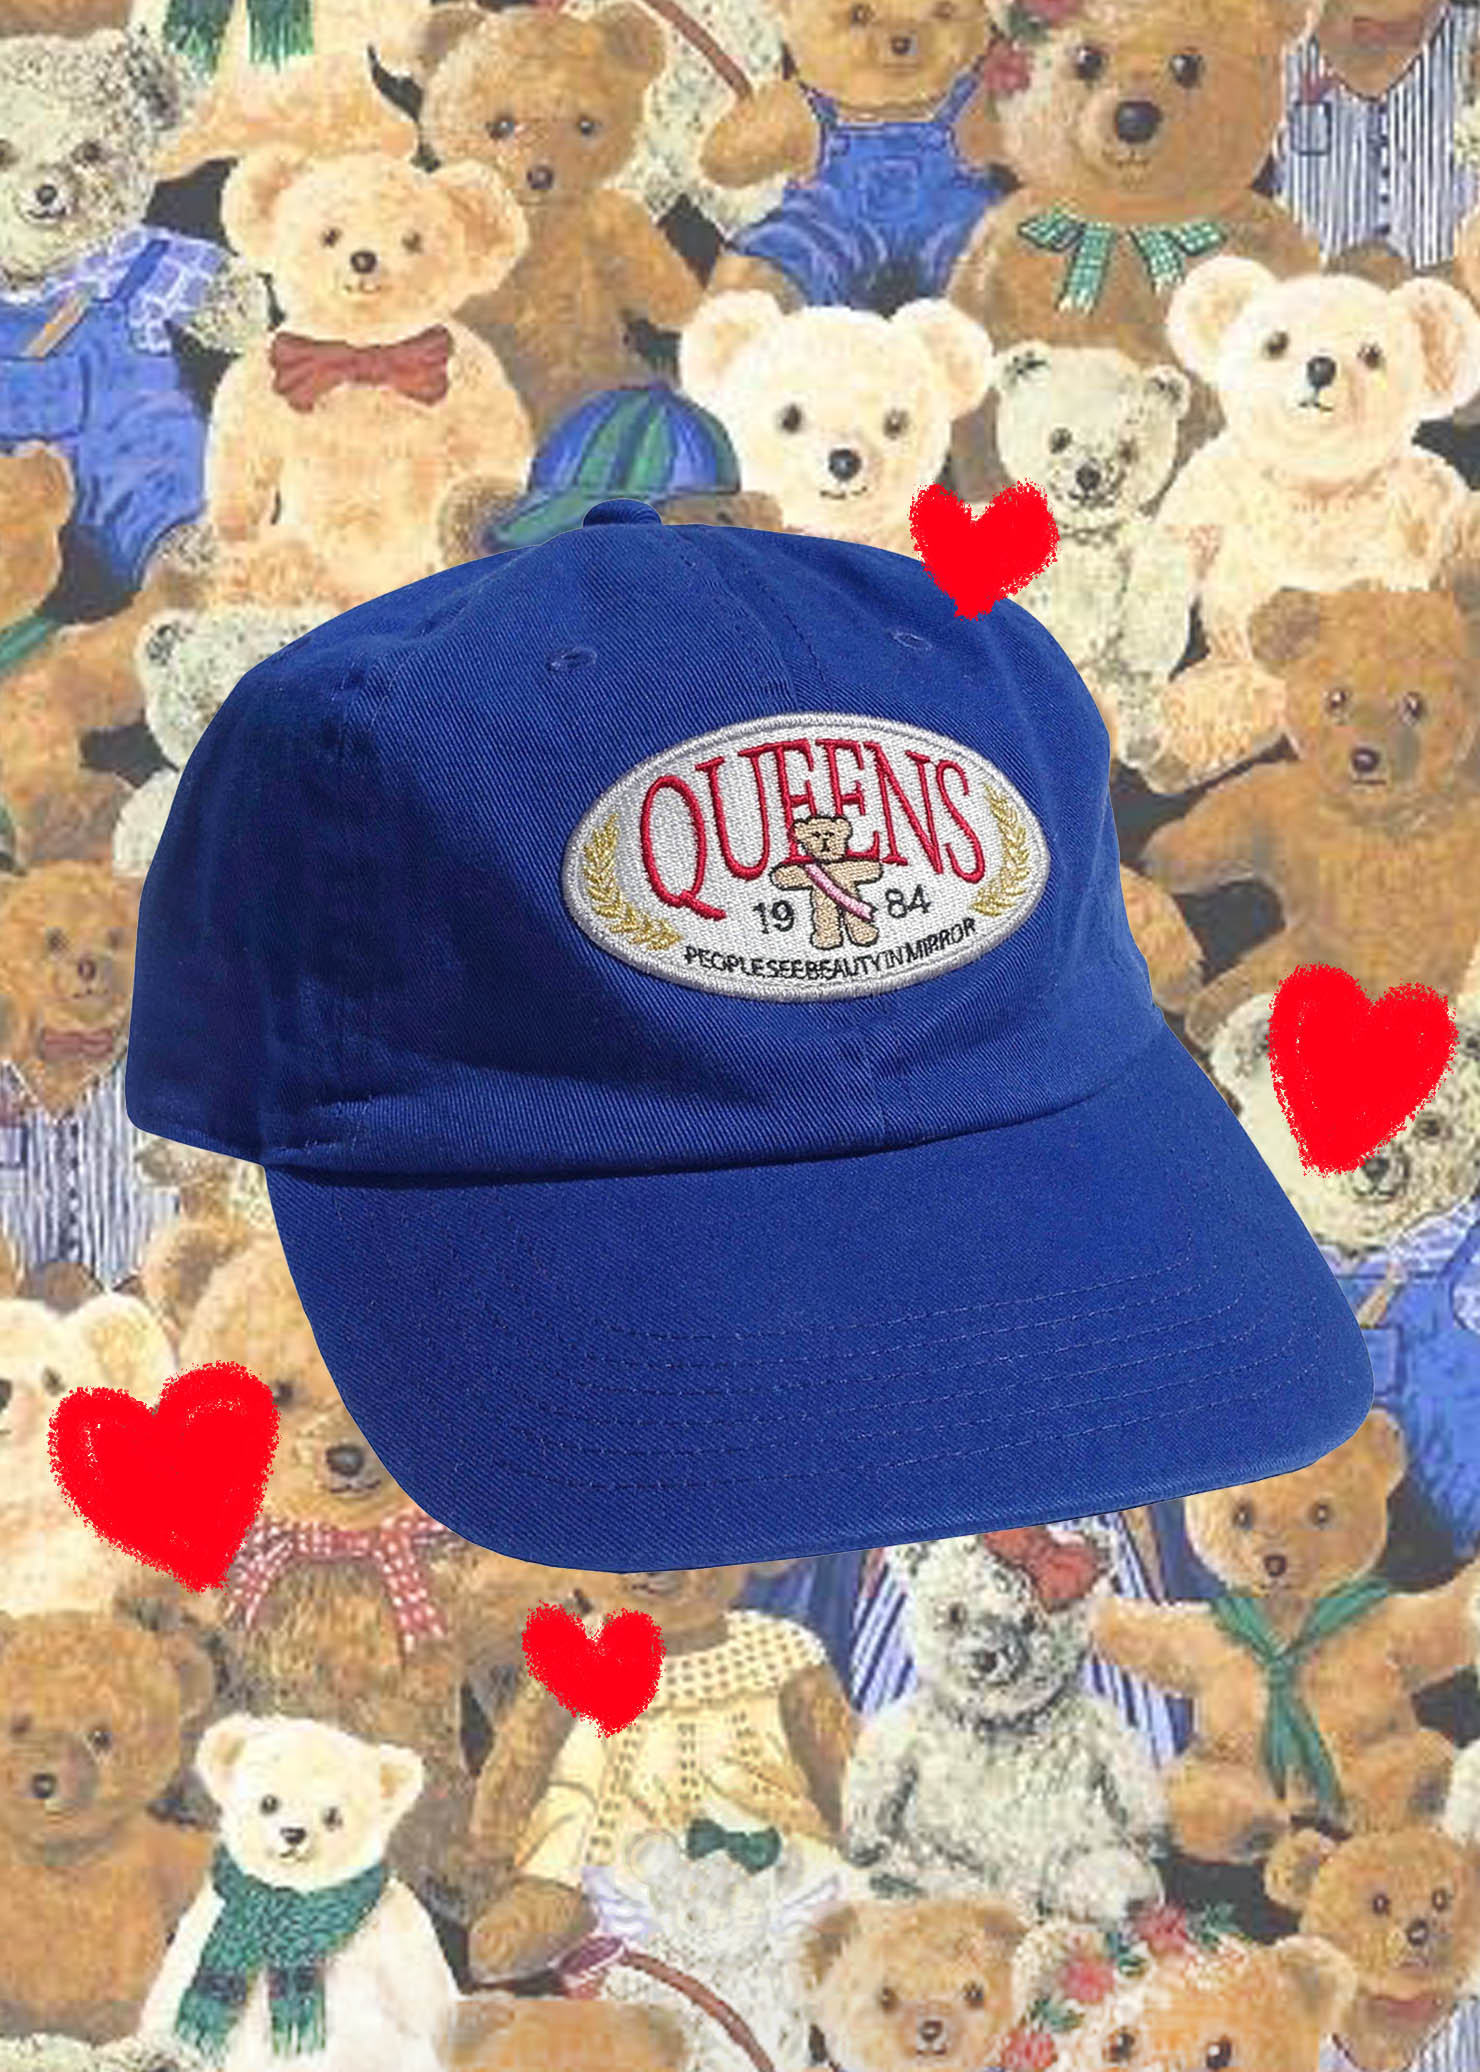 Queens cap